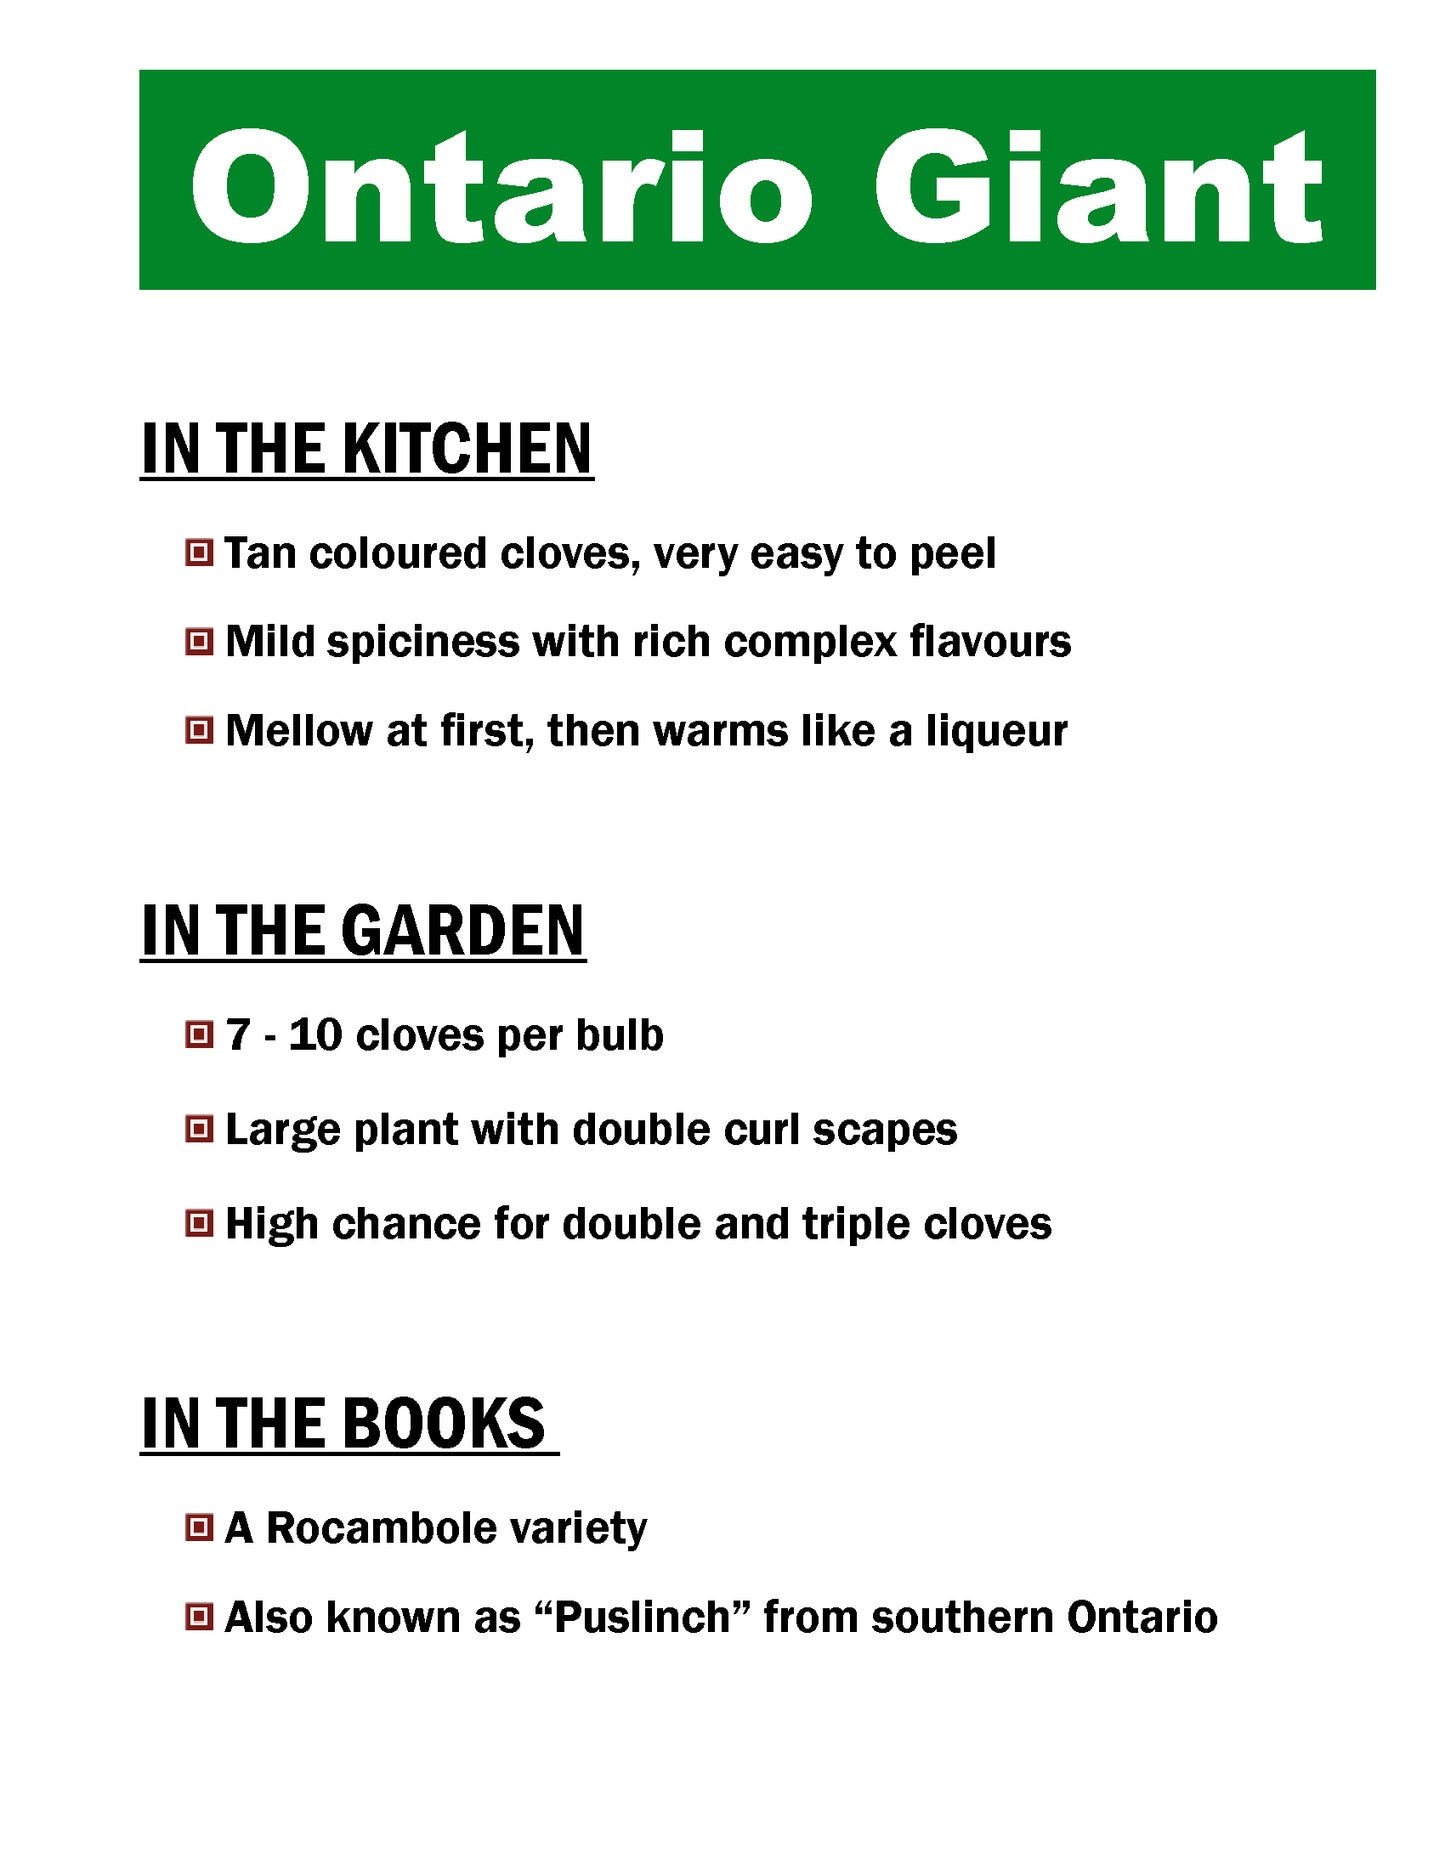 Ontario Giant, Puslinch, Rocambole, garlic description card by Garlicloves